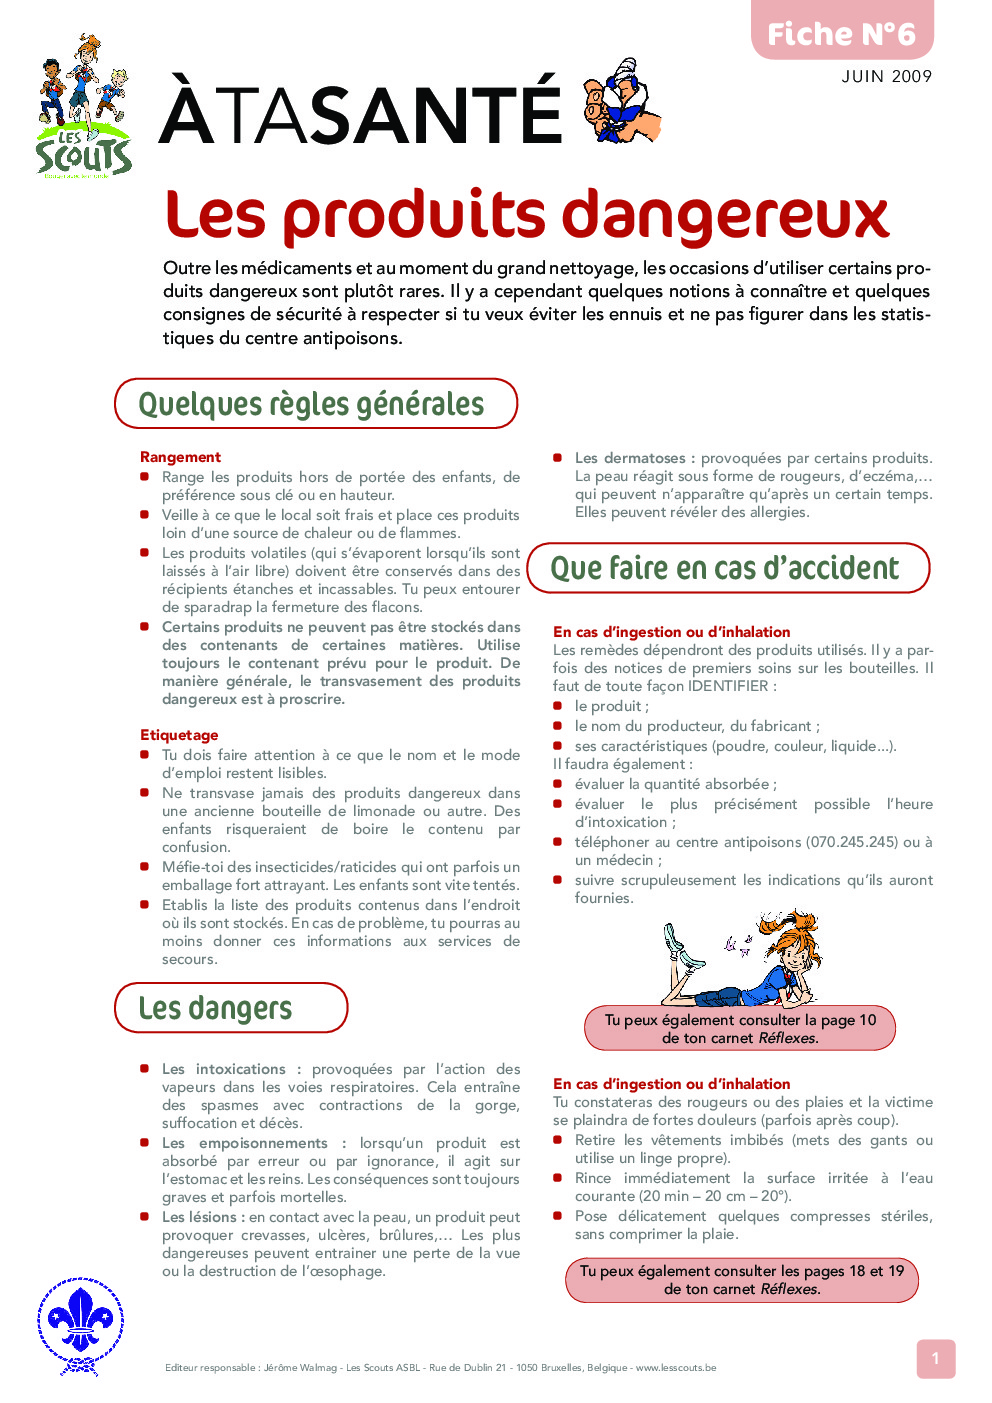 ATS_6_Les_produits_dangereux.pdf